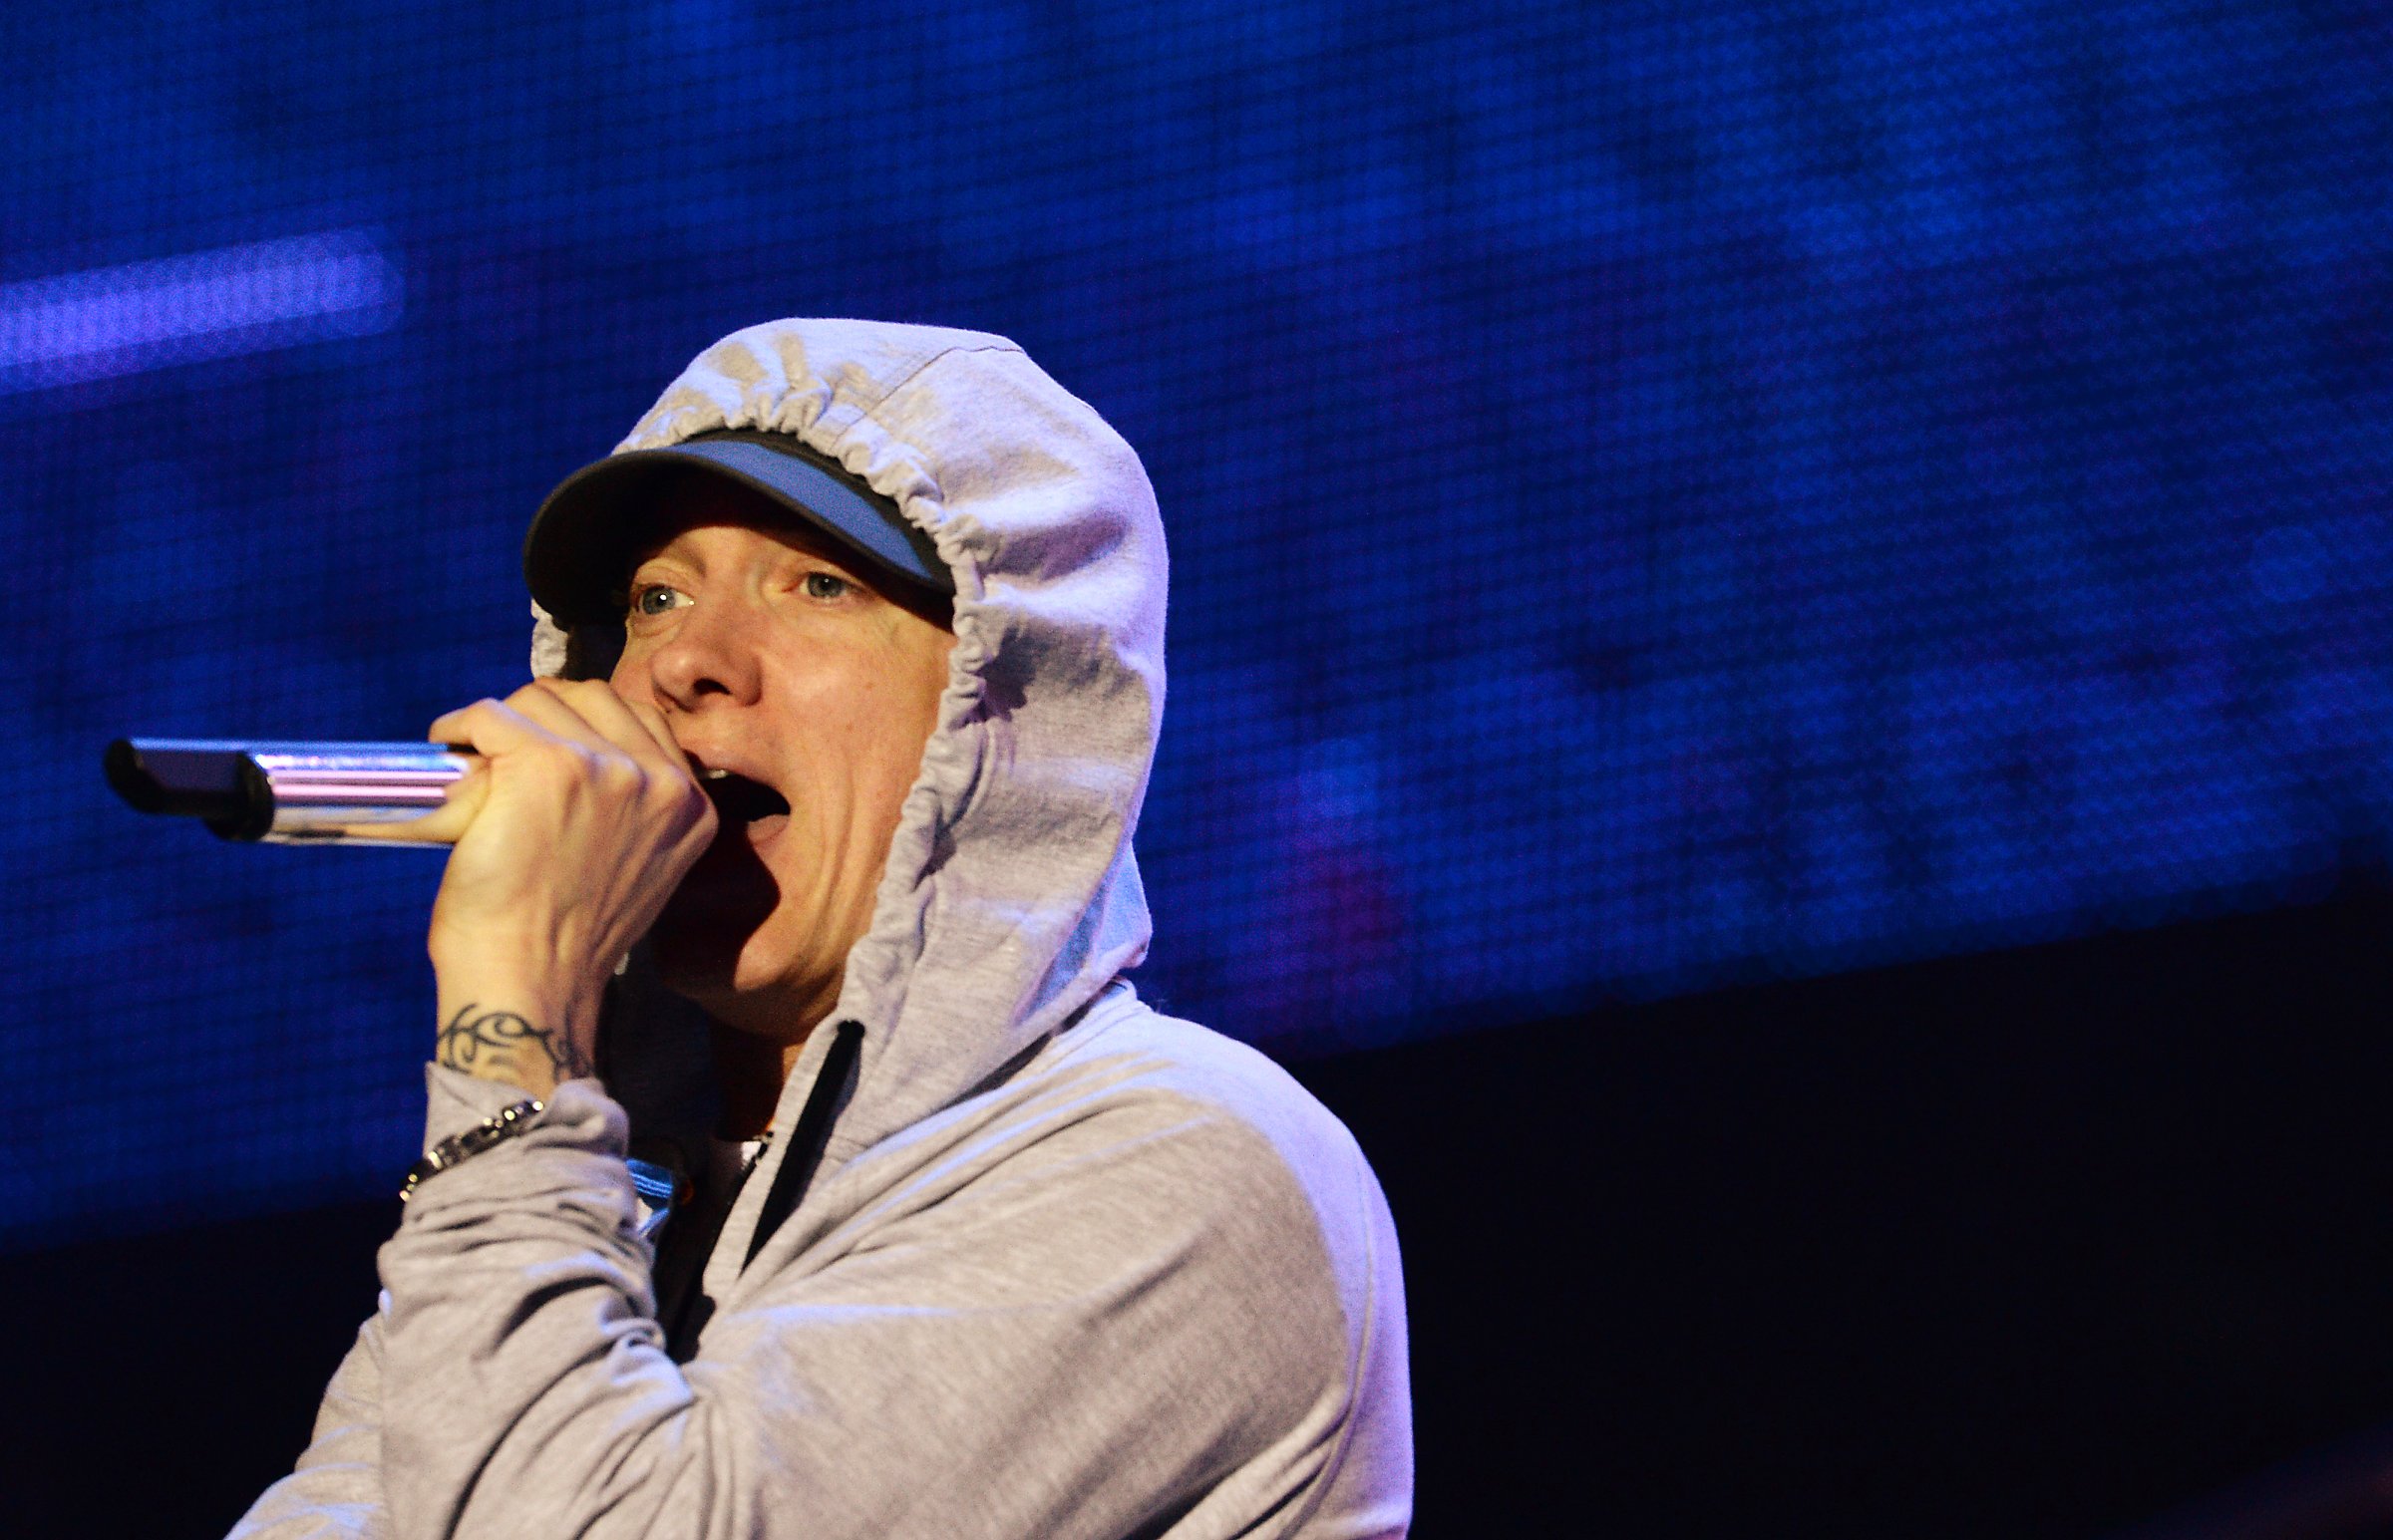 Eminem performs a concert at the Stade de France in Saints-Denis, near Paris, August 22, 2013.